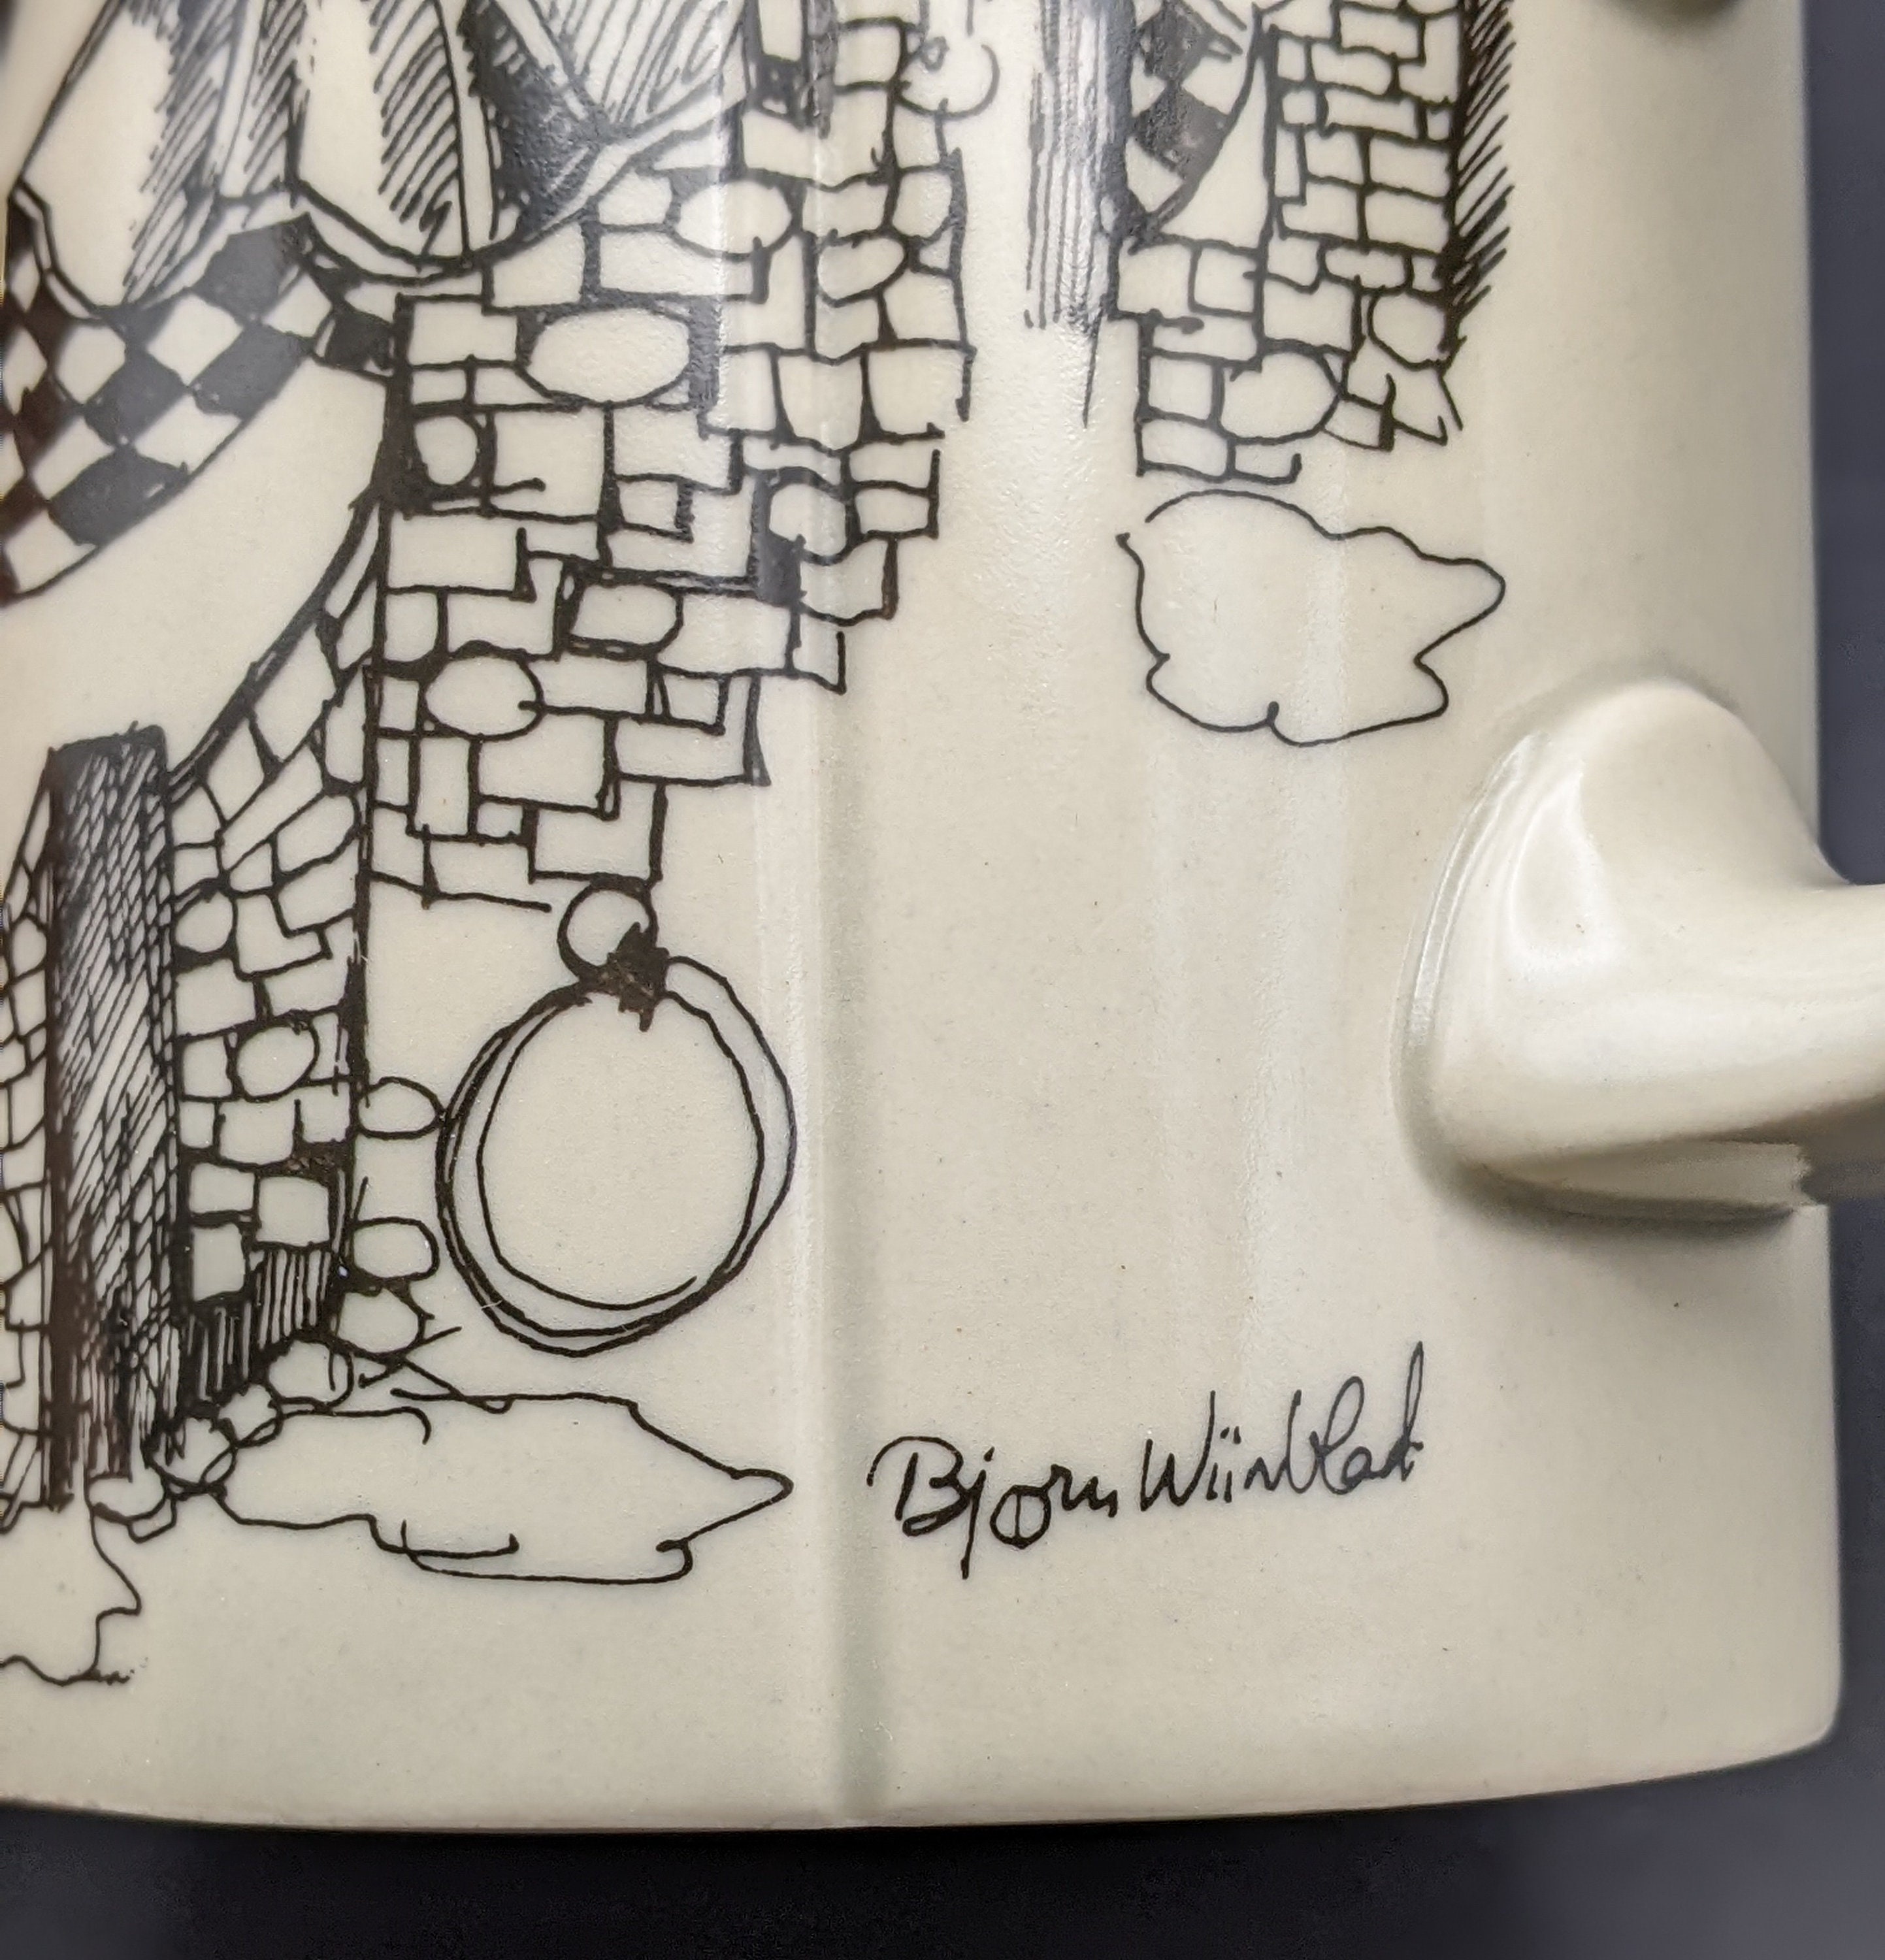 Rosenthal Studio Linie 'Björn Wiinblad' Stein/Mug Whimsical Stoneware Stein Iconic Wiinblad. 'Til Eulenspiegel' Line Drawing Mug